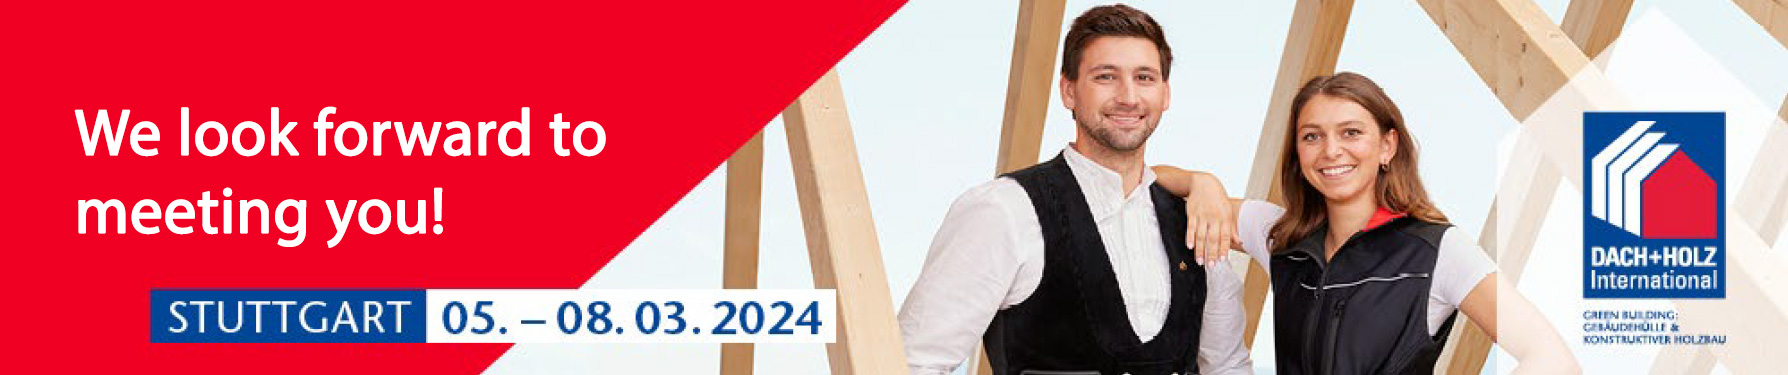 Dach+Holz Stuttgart 2024